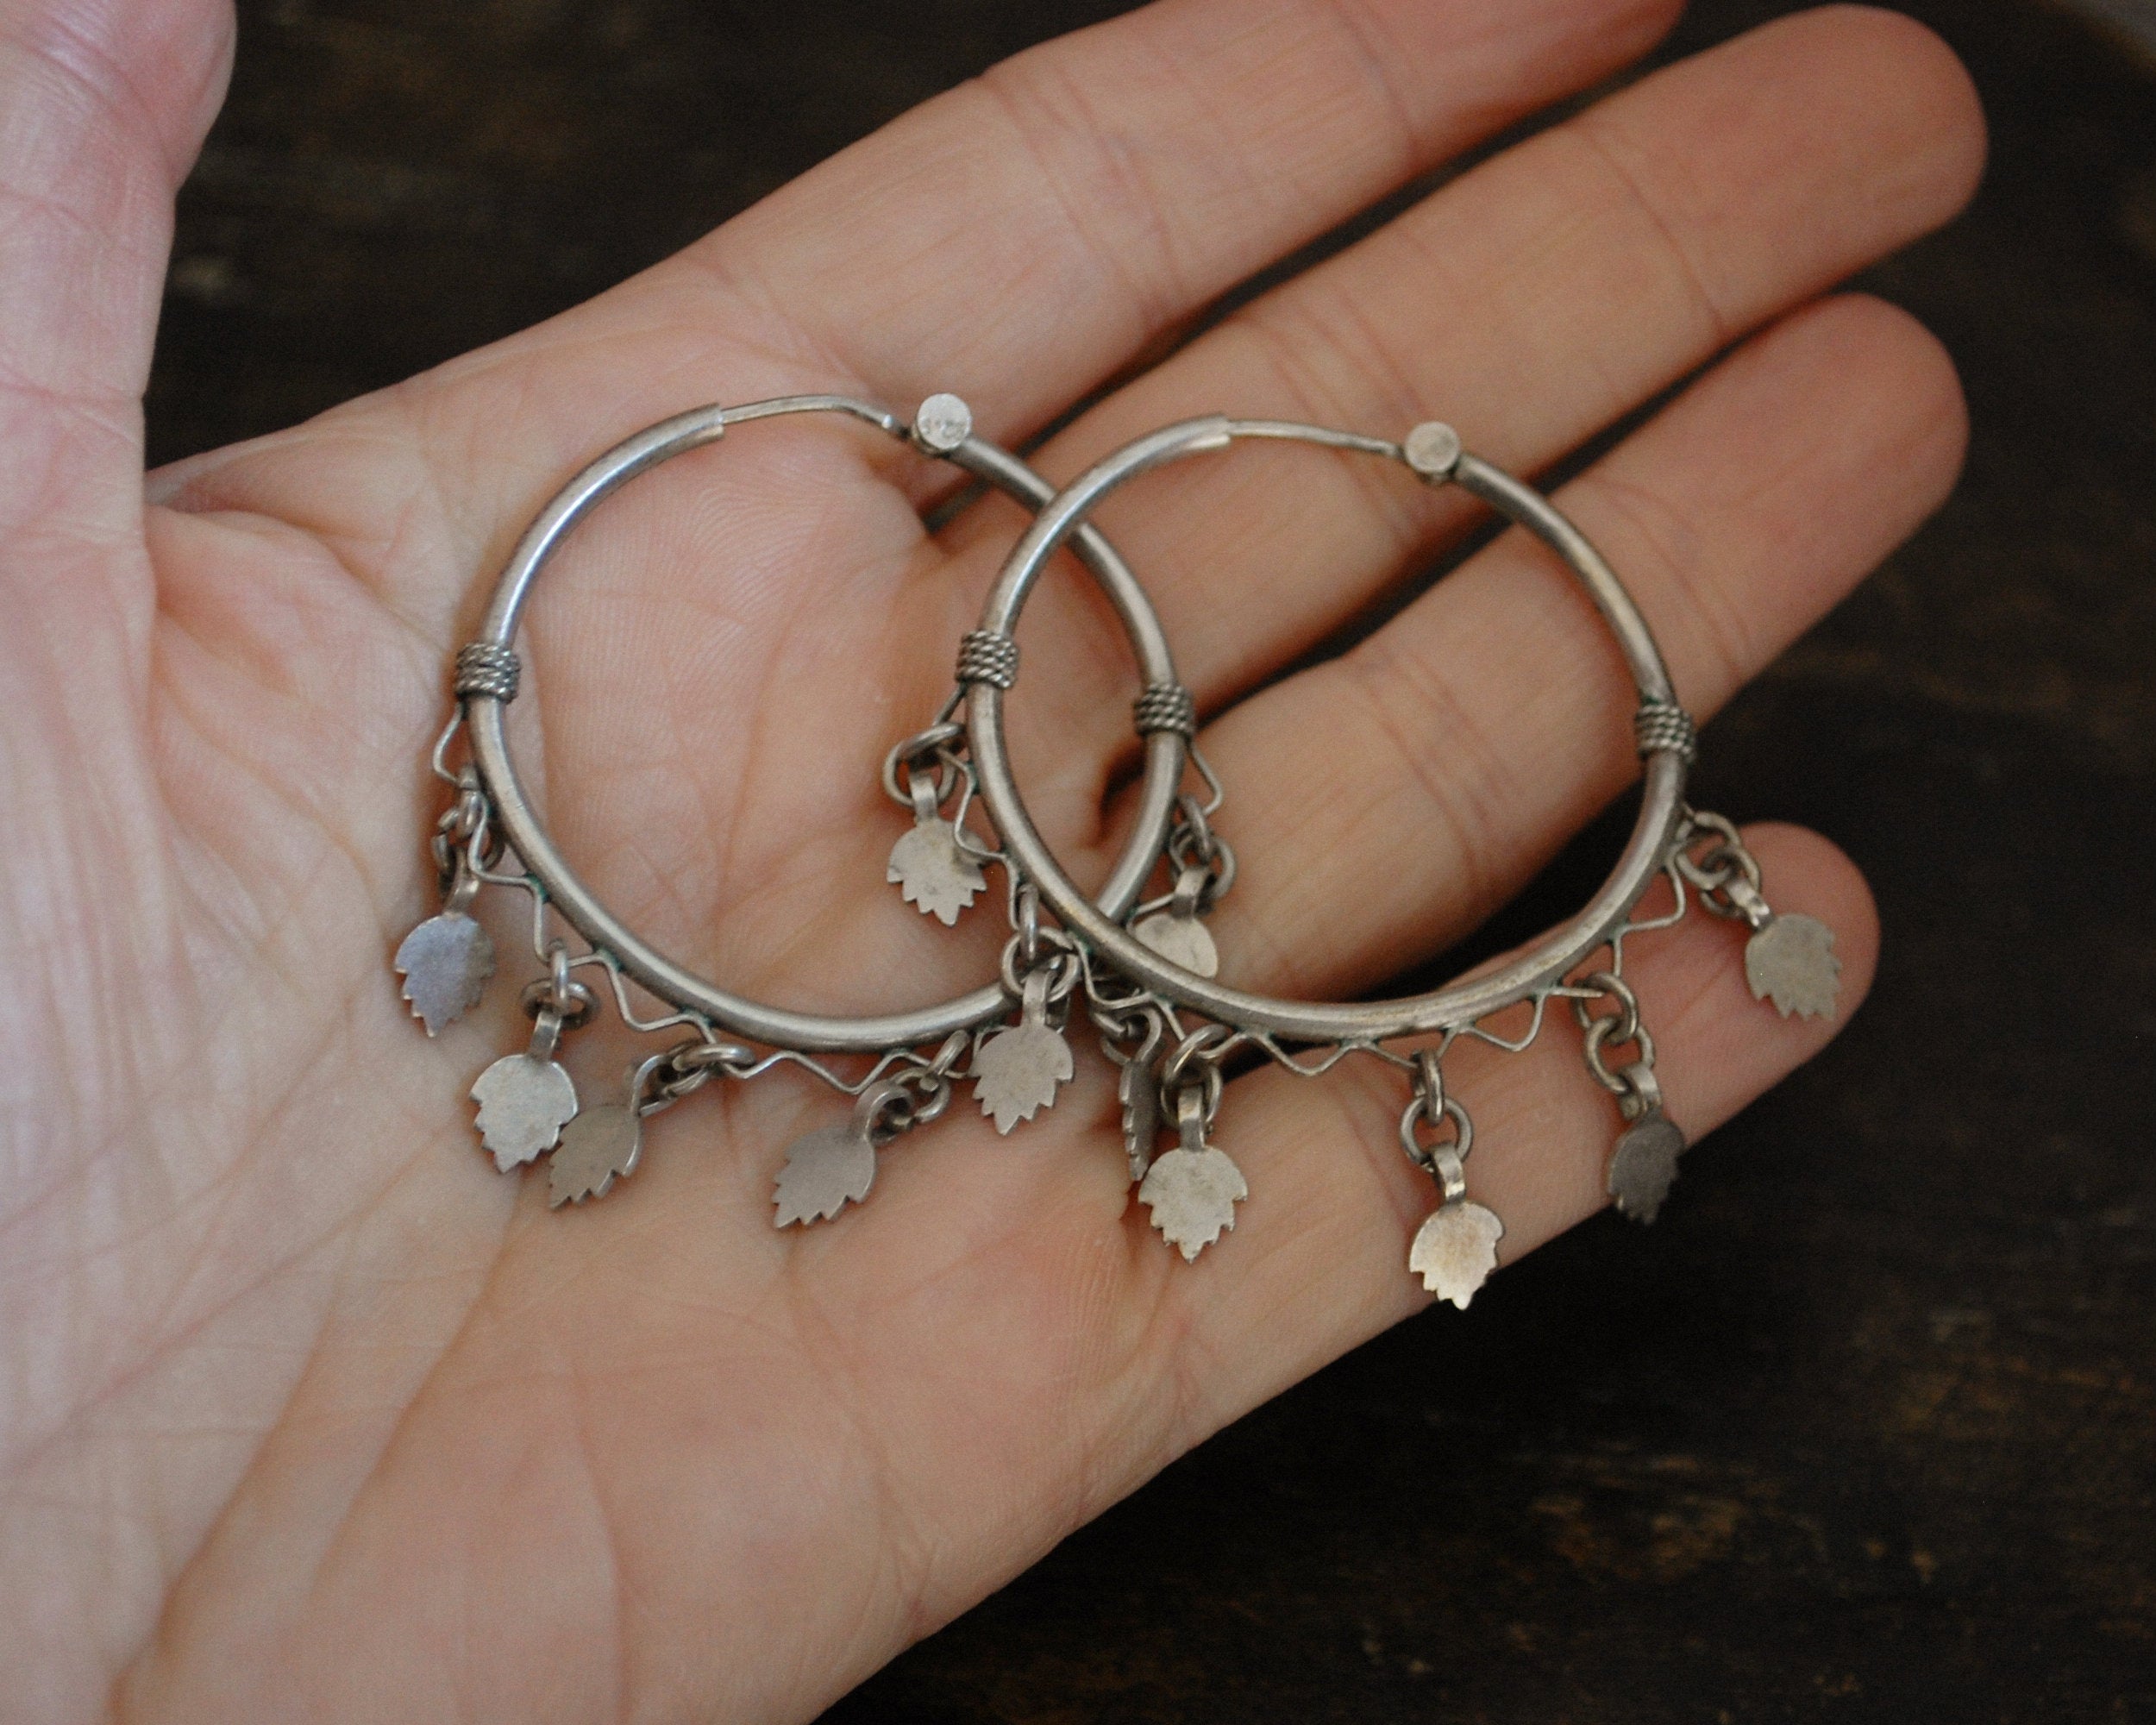 Rajasthani Hoop Earrings with Dangles - LARGE